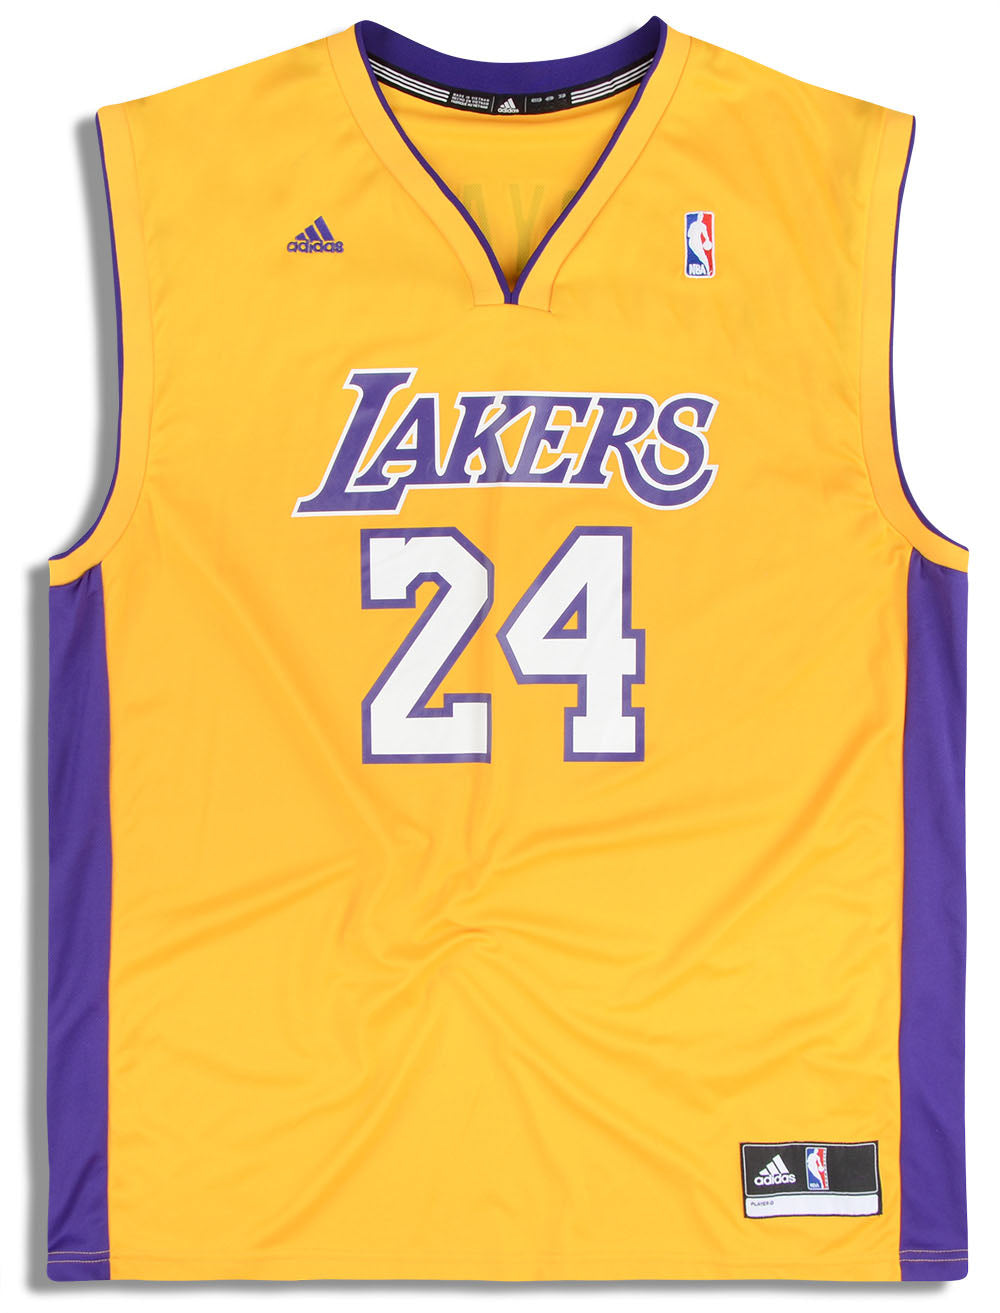 adidas, Shirts, 24 Kobe Bryant Lakers Jersey